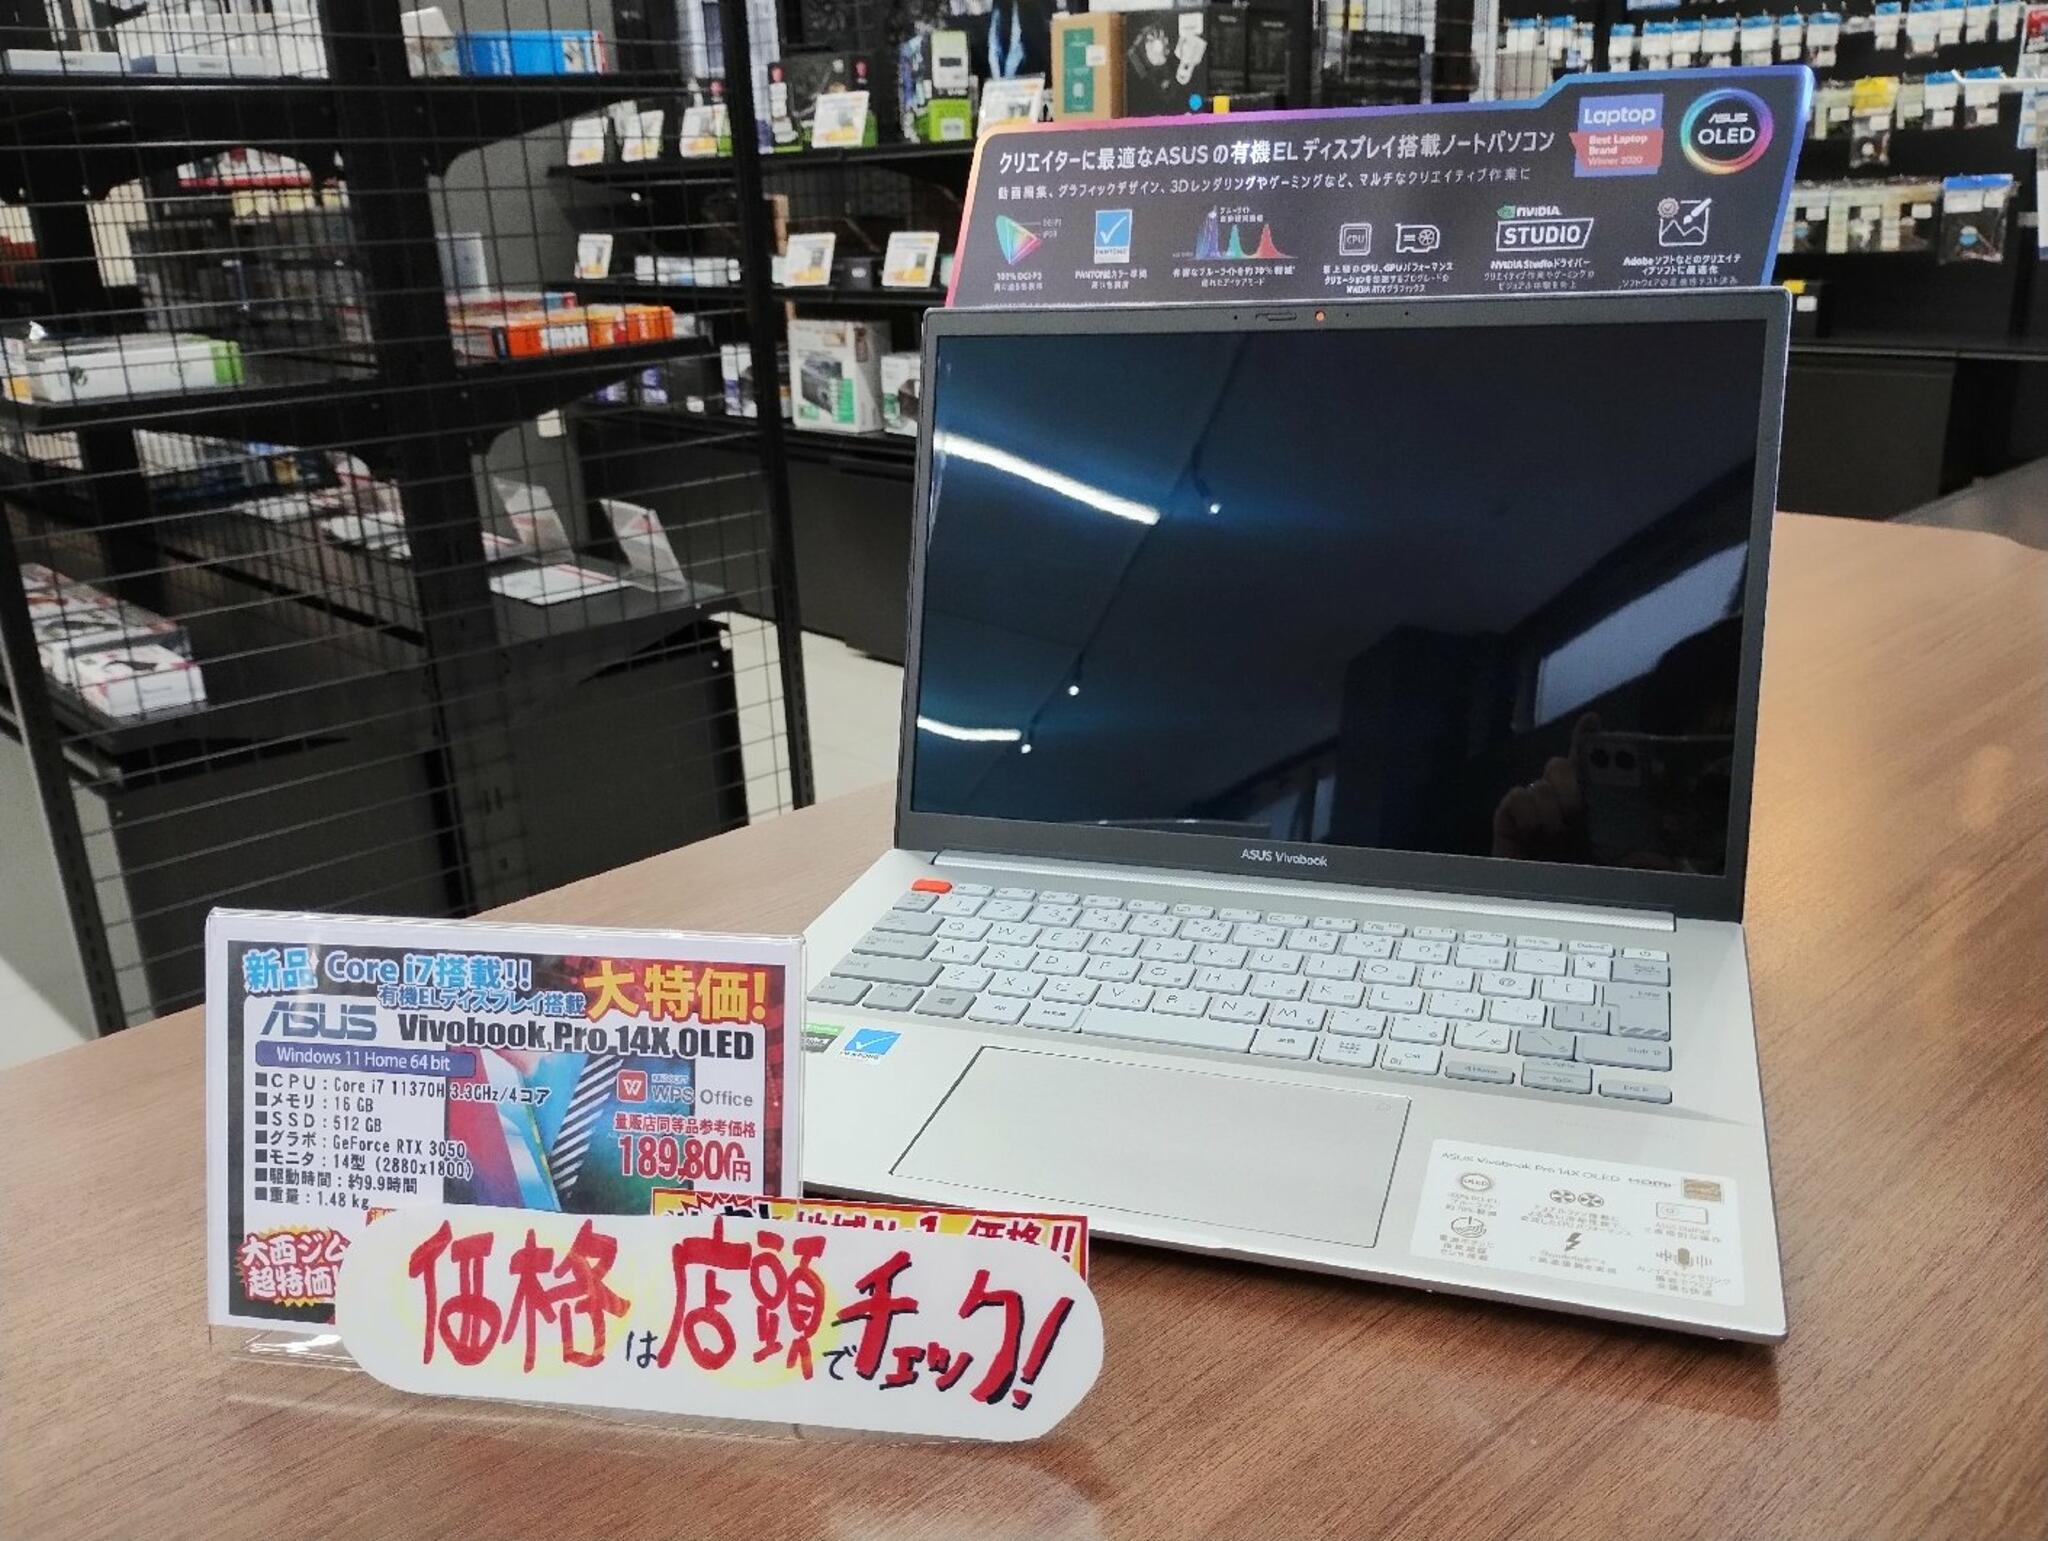 パソコン専門店 大西ジム 新長田店からのお知らせ(14型ハイスペックモバイルノート「Vivobook Pro 14X」入荷しました！)に関する写真